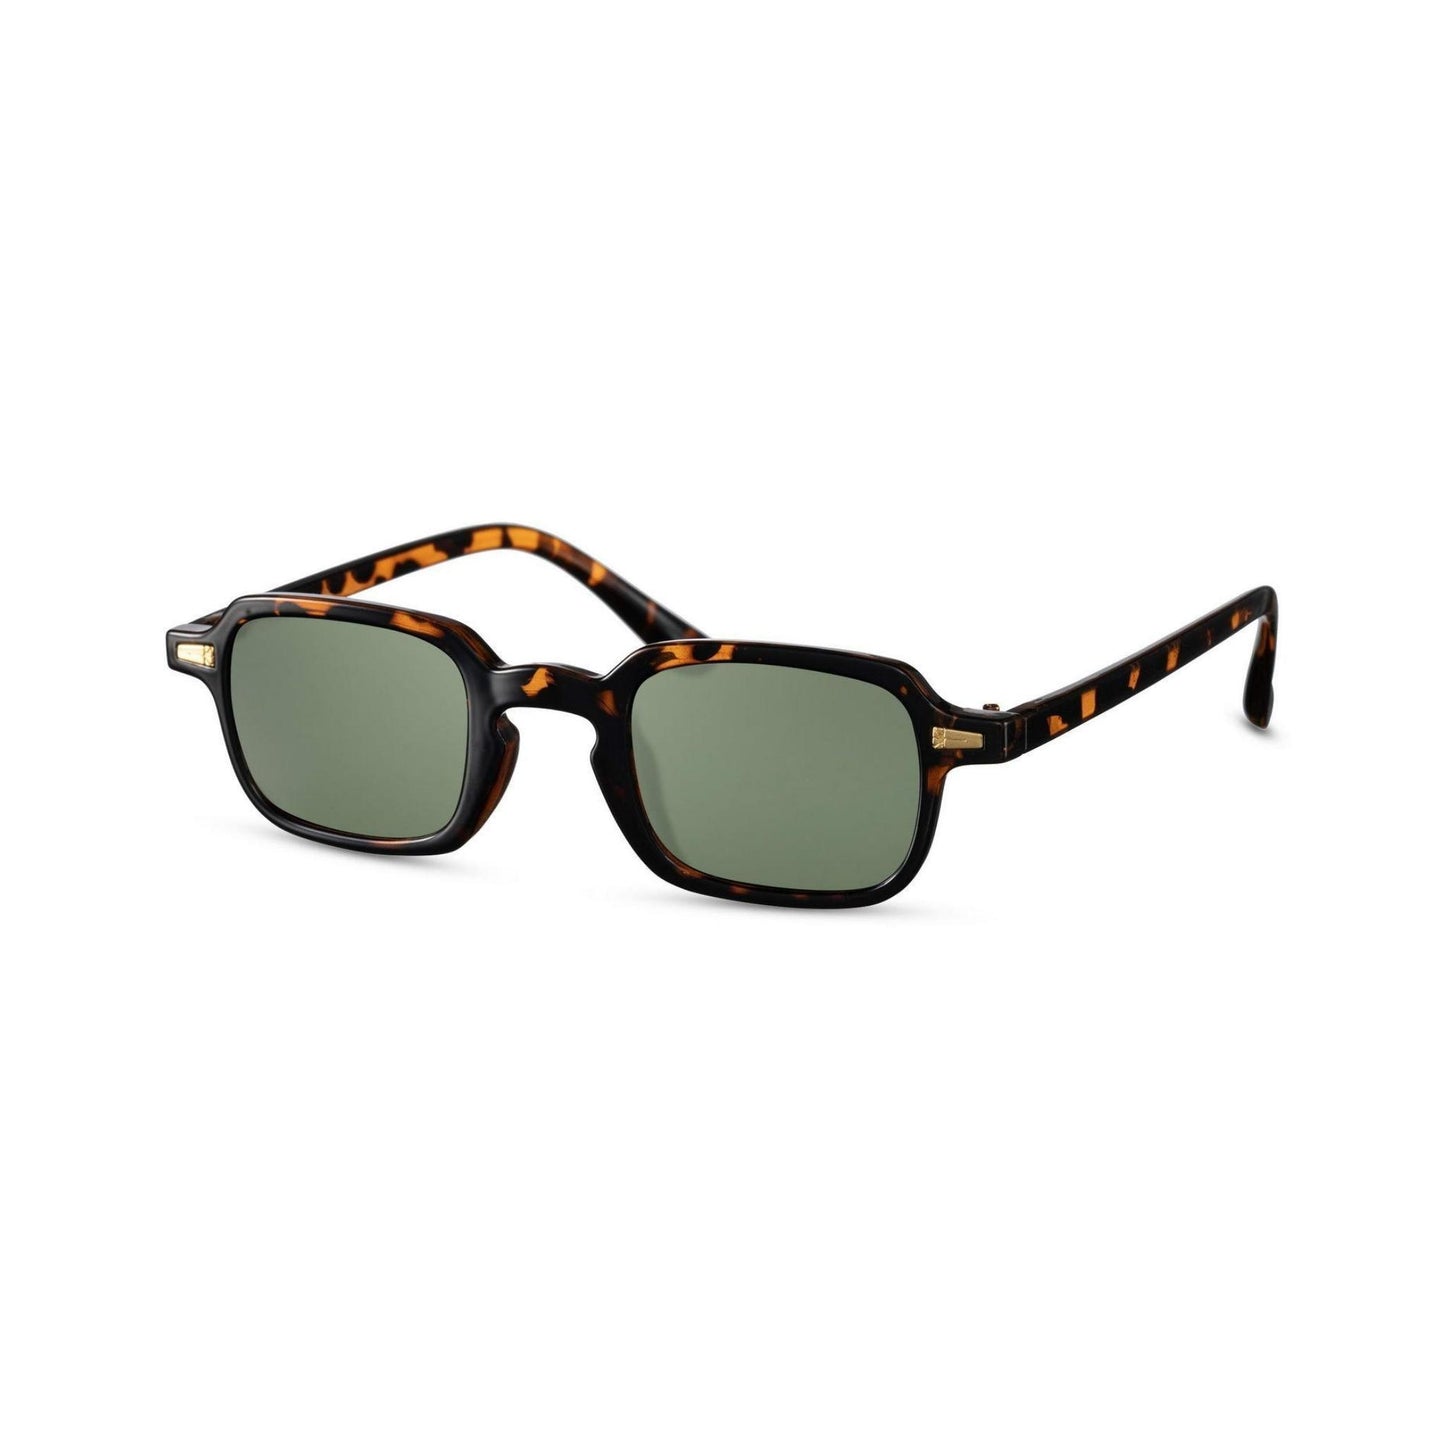 Τετράγωνα Γυαλιά ηλίου Luminous της Exposure Sunglasses με προστασία UV400 με καφέ σκελετό και πράσινο φακό. Πλάγια προβολή